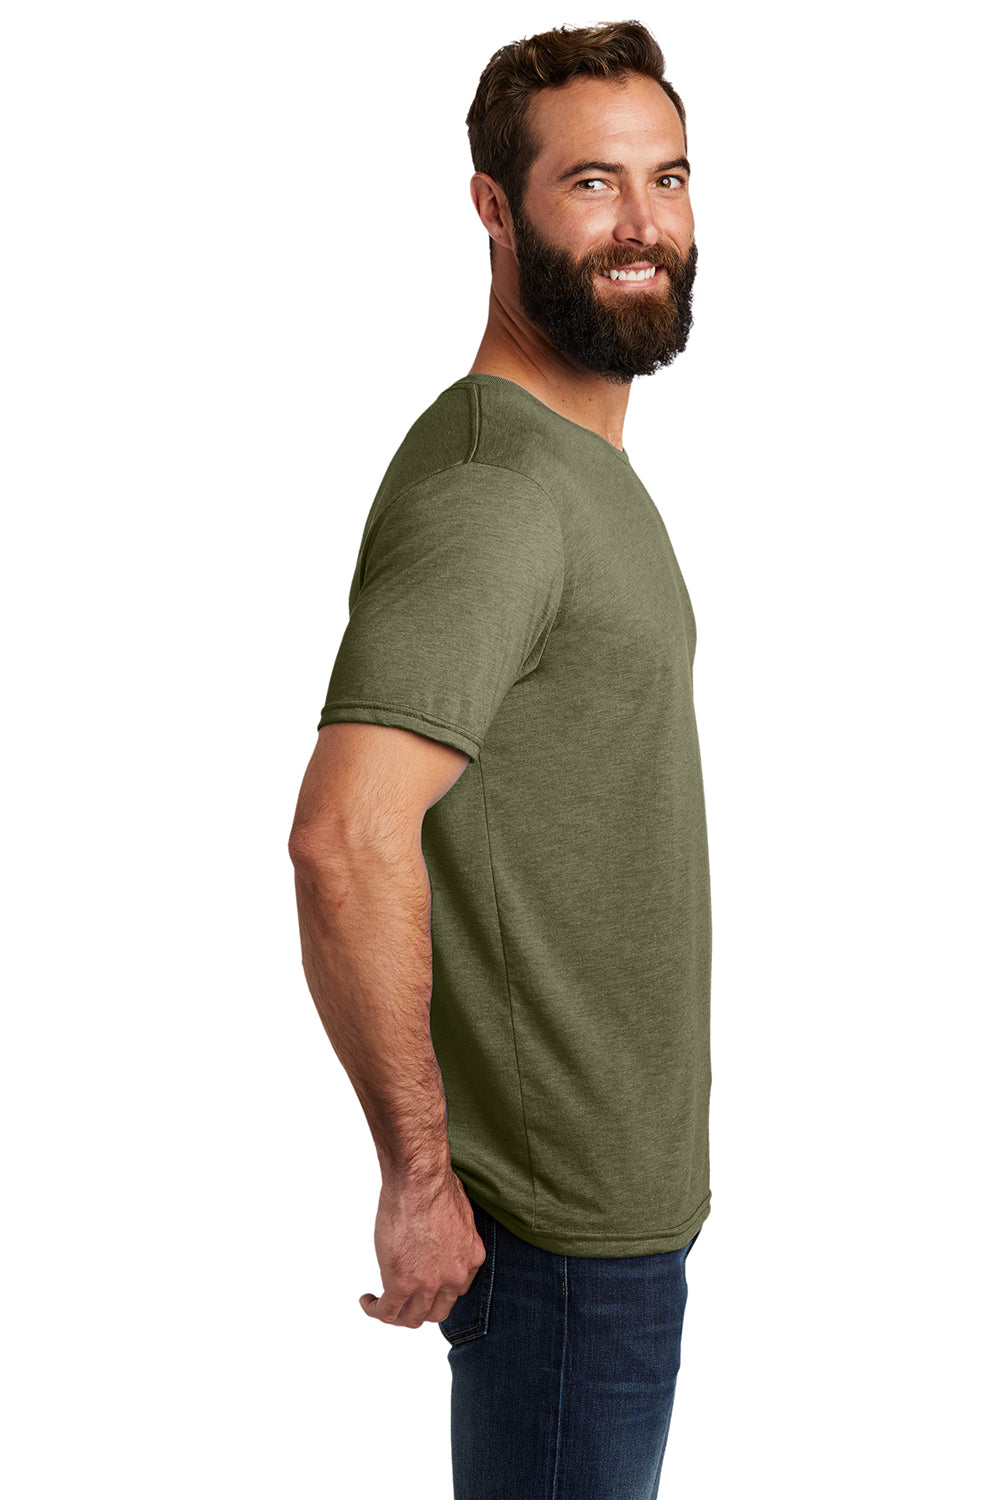 Allmade AL2004 Mens Short Sleeve Crewneck T-Shirt Olive You Green Model Side